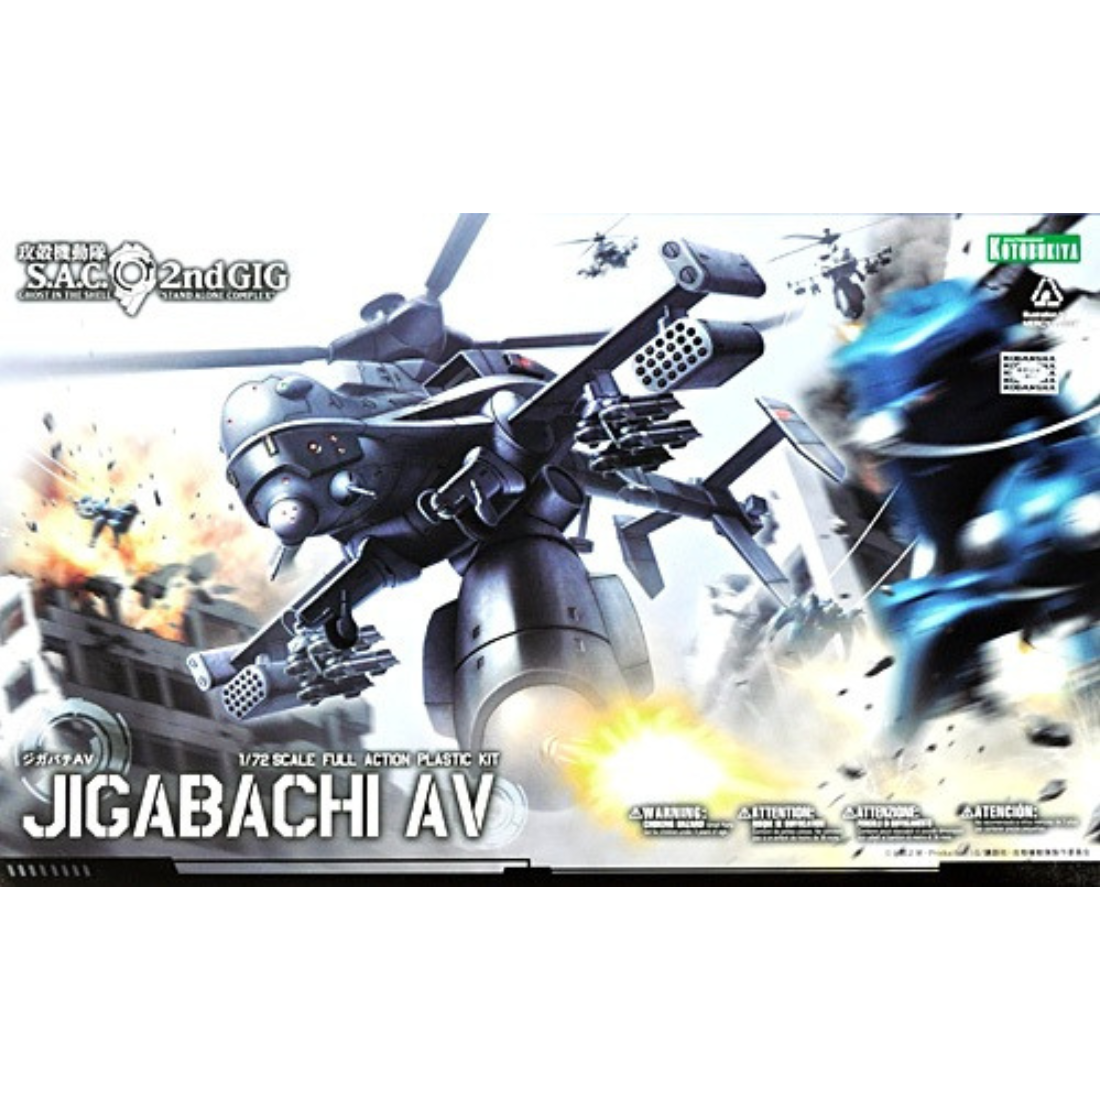 Jigabachi AV Attack Helicopter 1/72 Ghost in the Shell S.A.C. 2nd Gig #KP292X Anime Model Kit by Kotobukiya